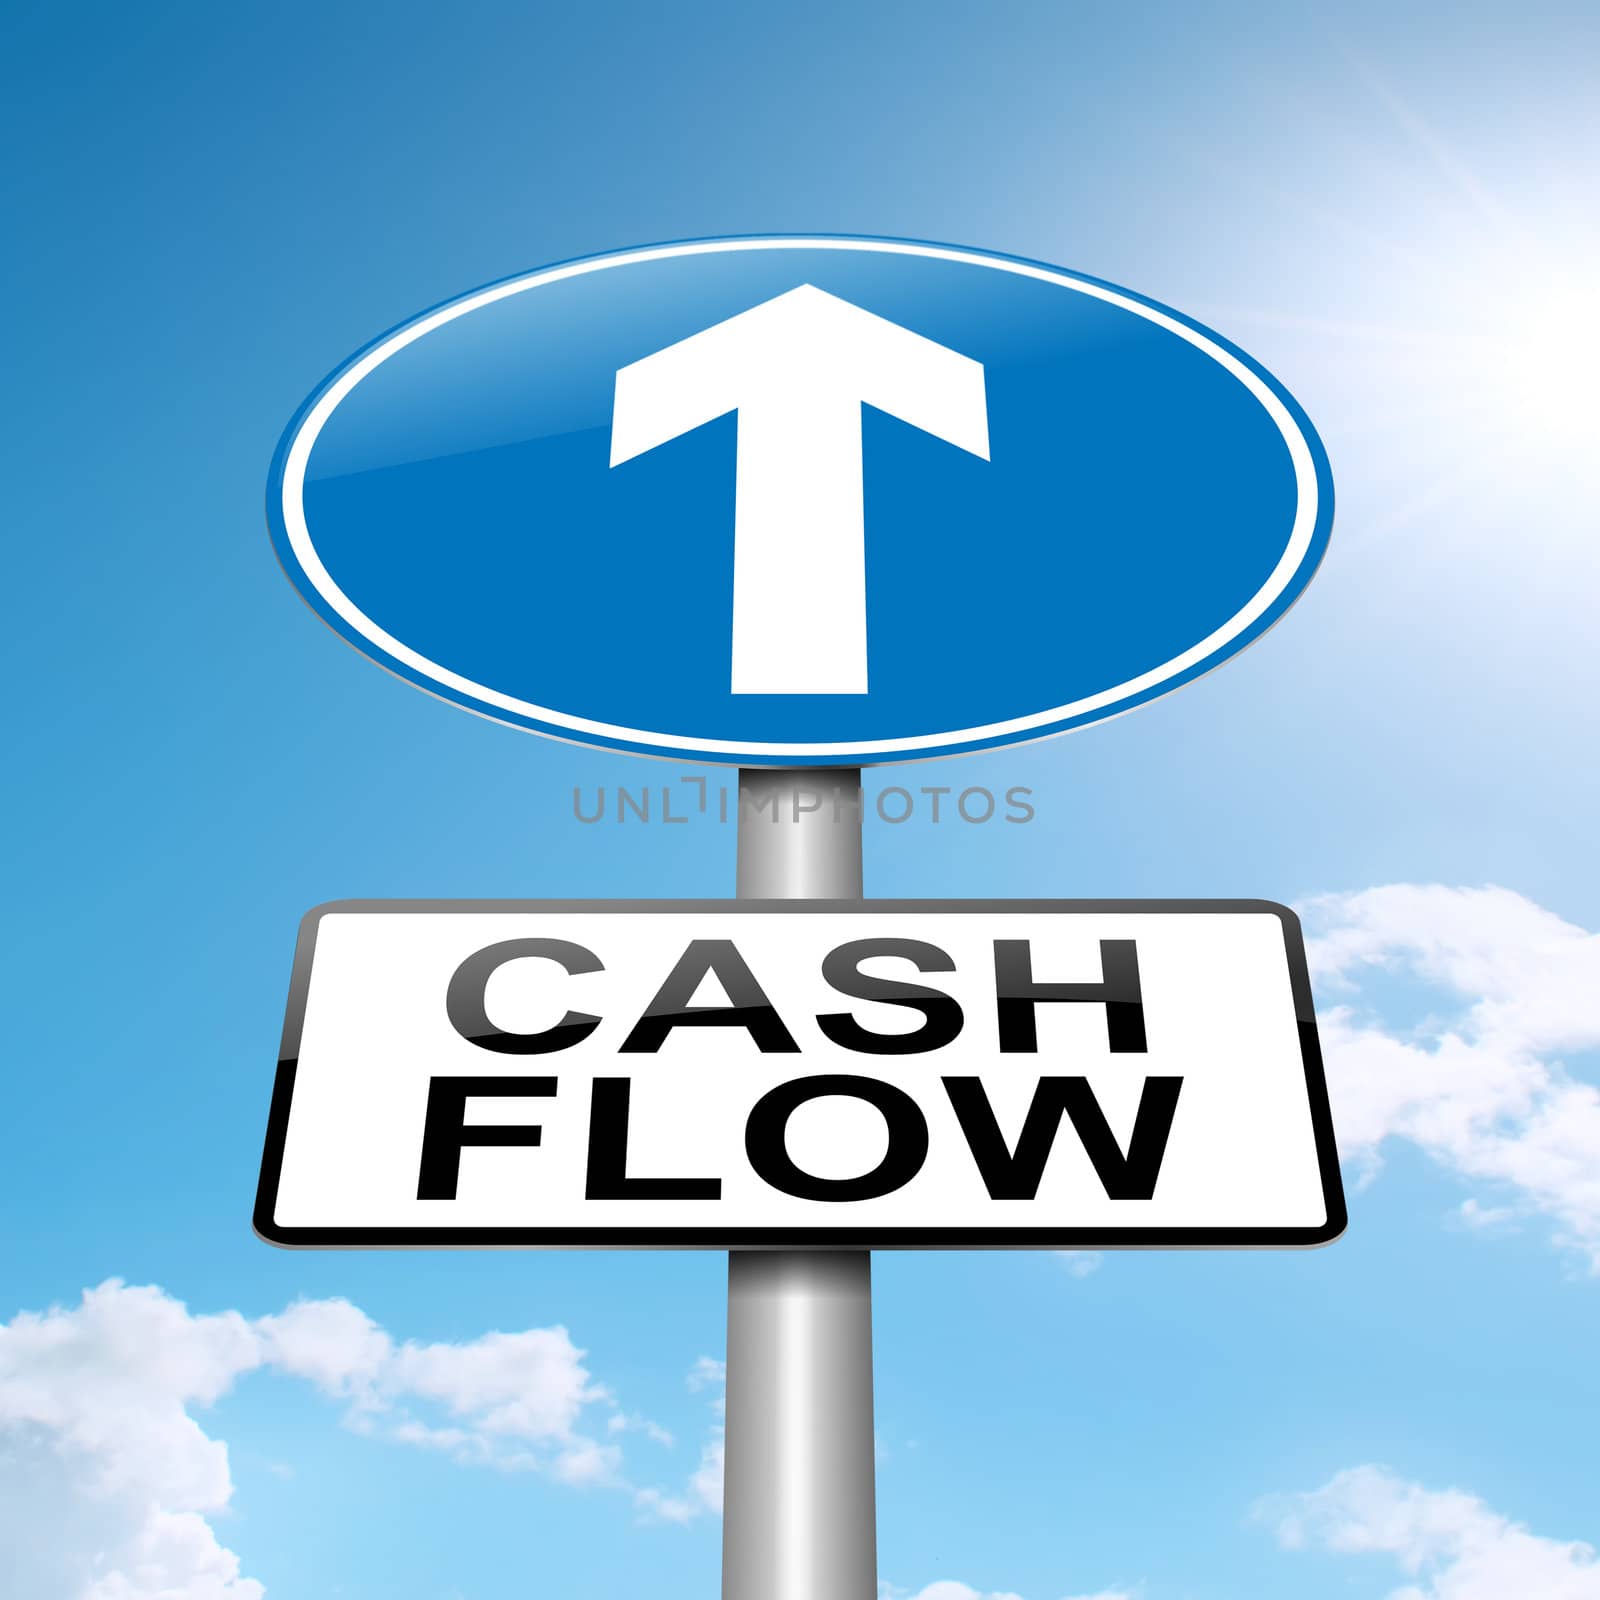 Cash flow concept. by 72soul